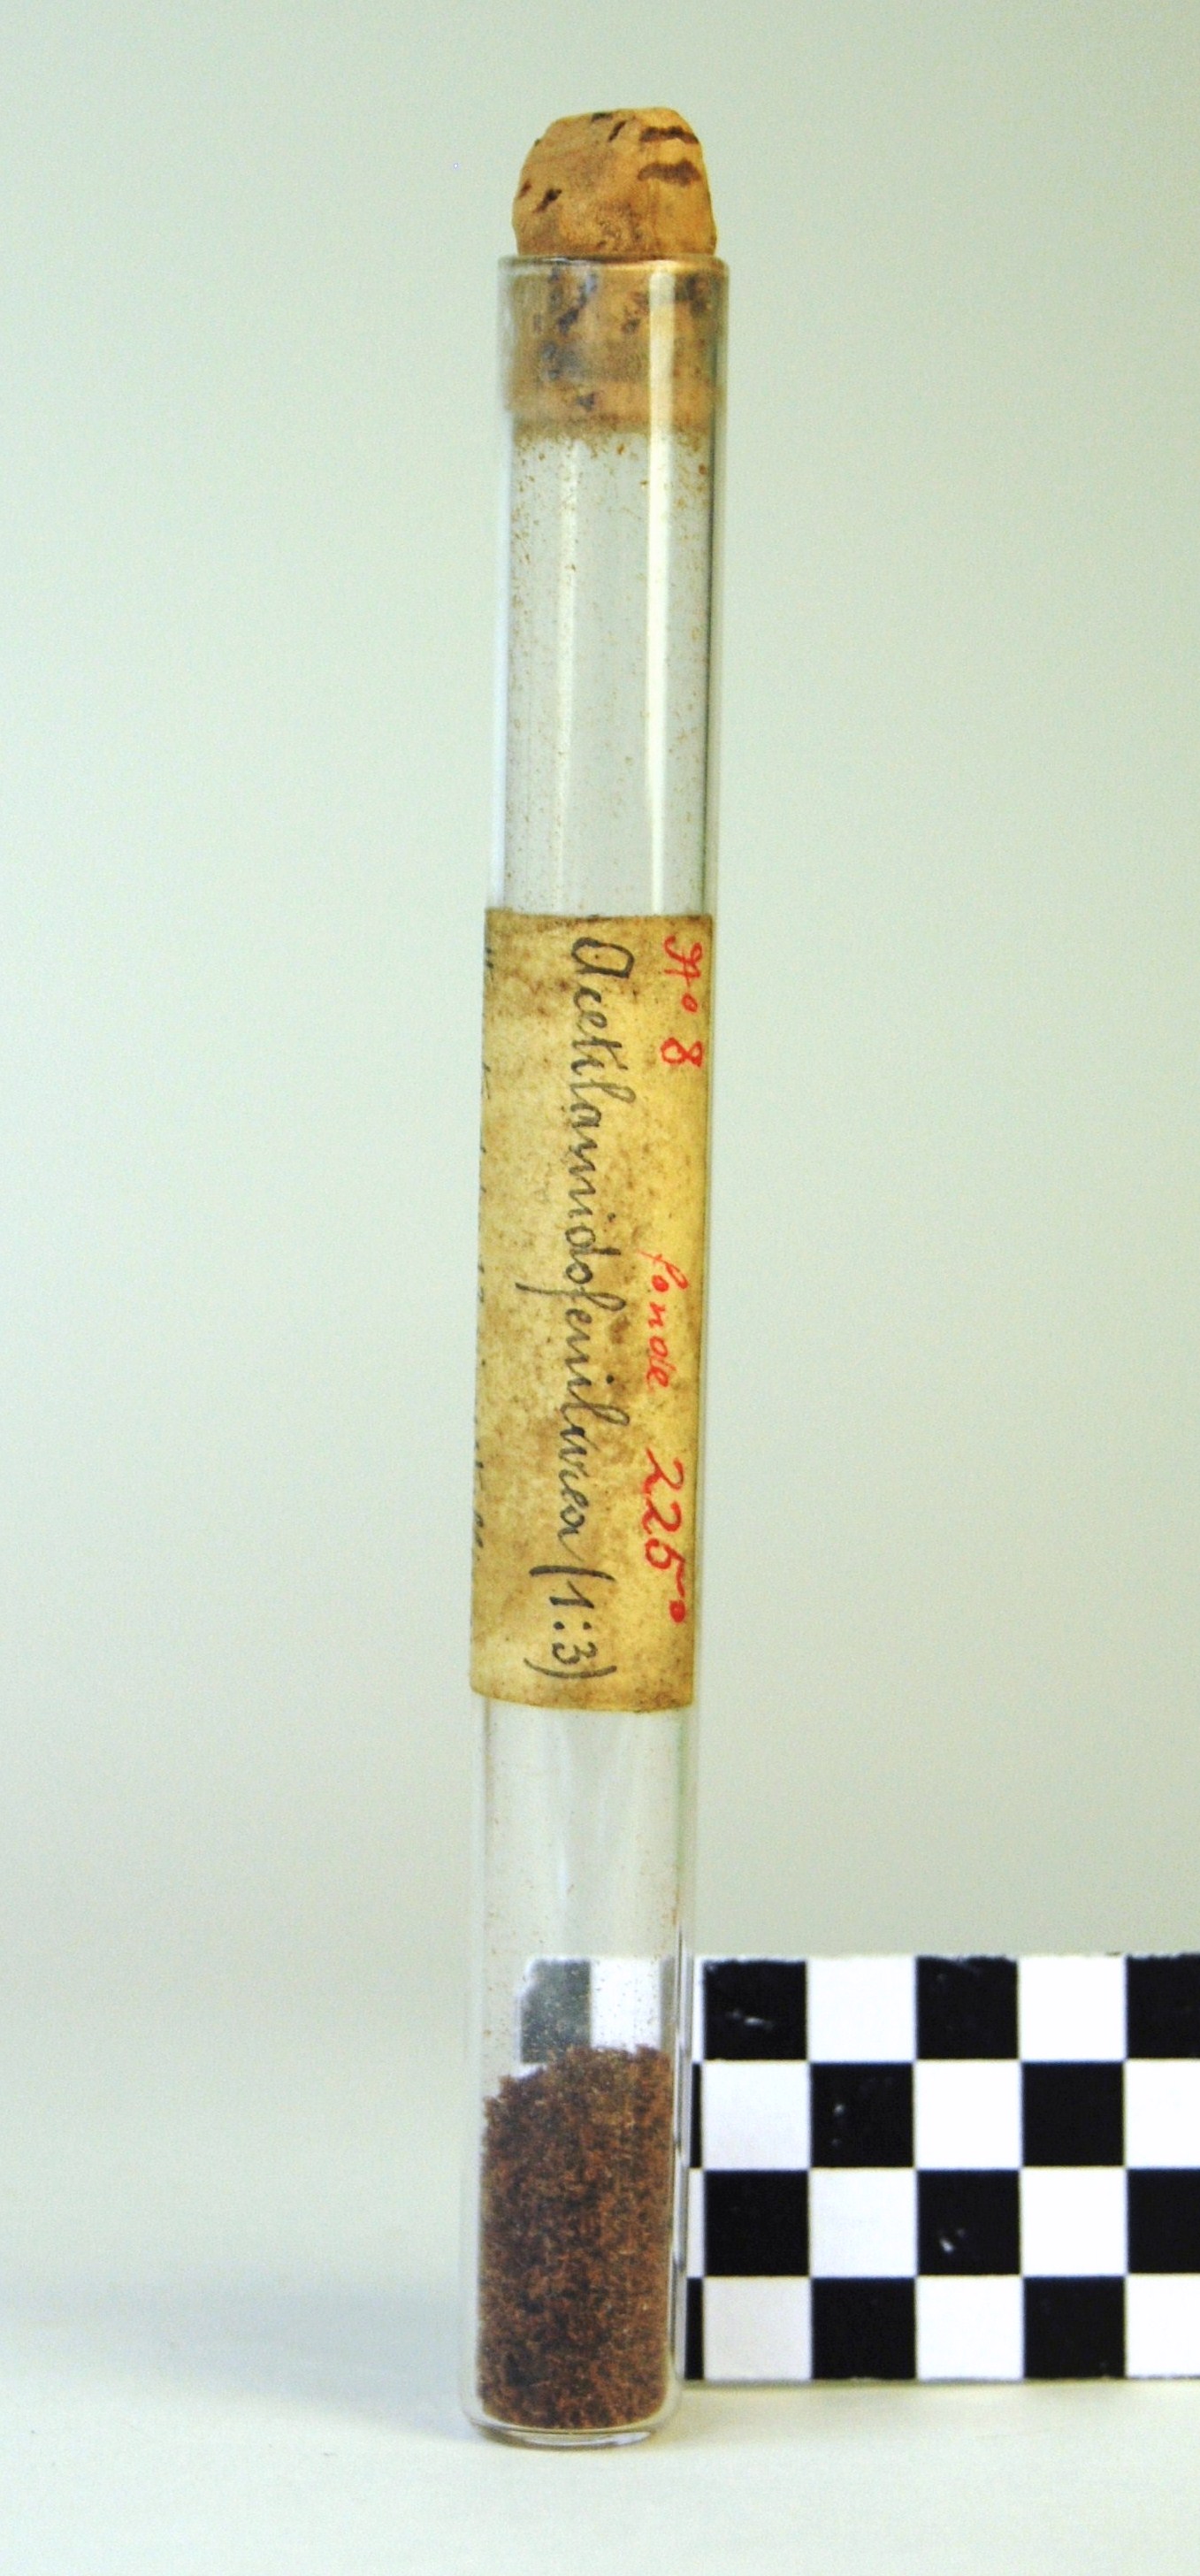 acetilammidofenilurea (prodotto chimico, di sintesi) di Ugo Schiff (laboratorio) - scuola chimica fiorentina (metà/ inizio XIX/ XX)